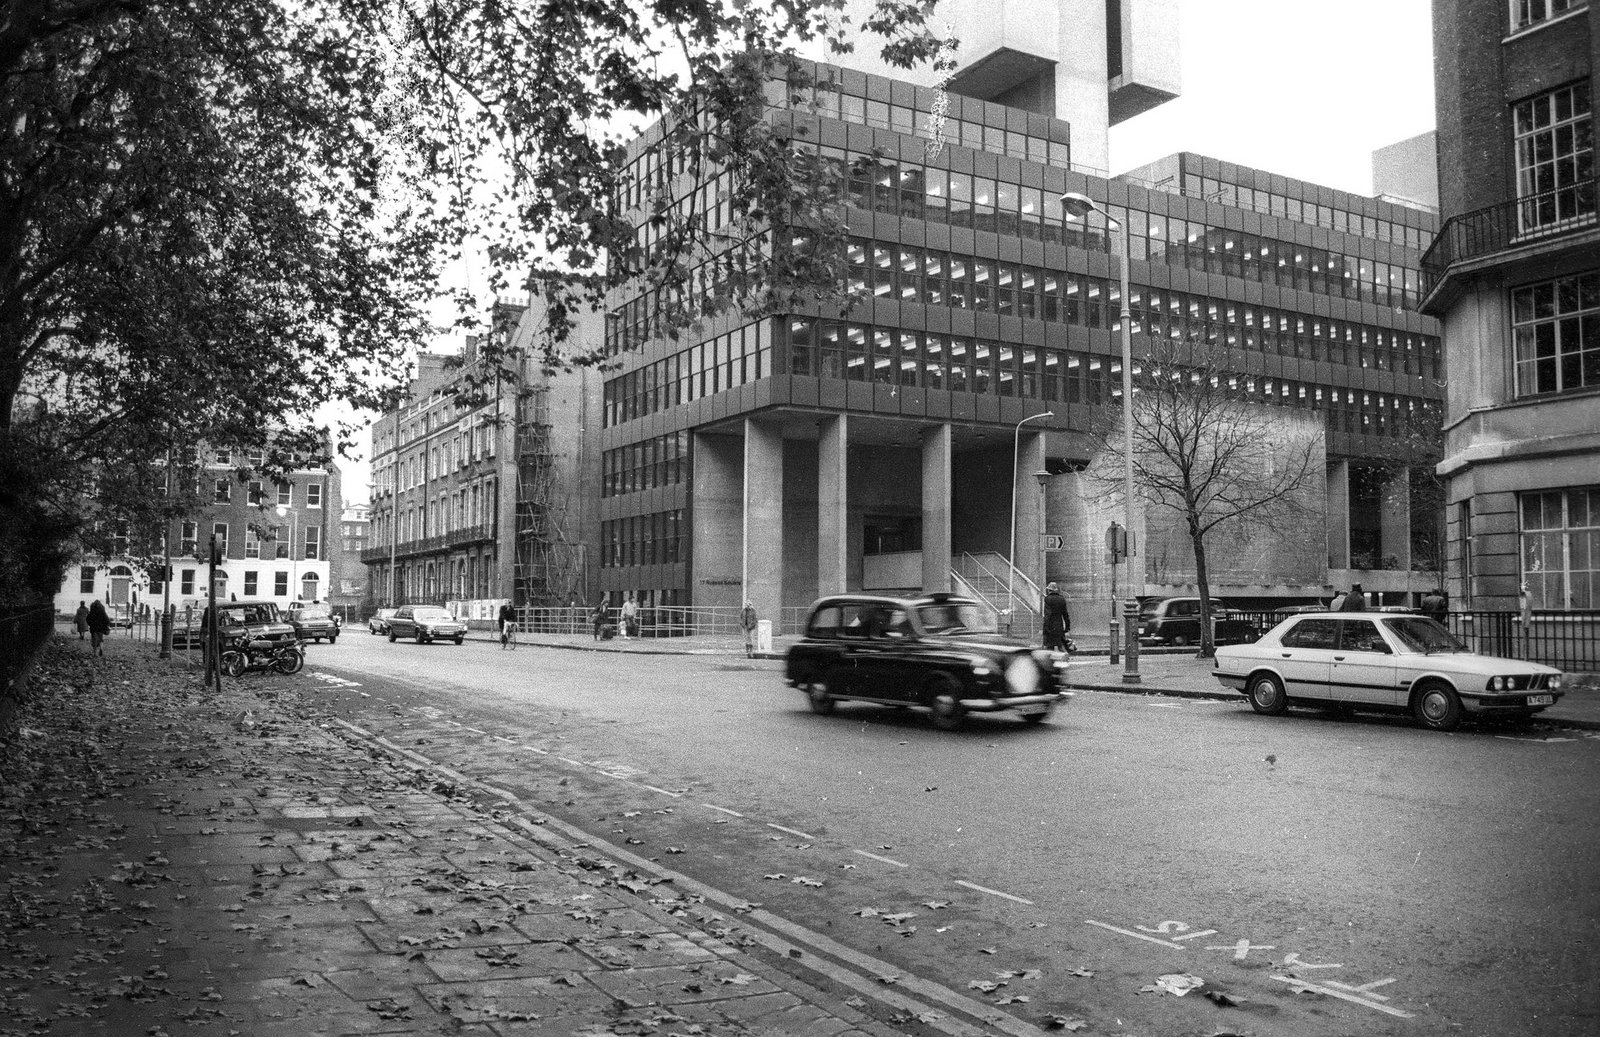 Bloomsbury, London 1985